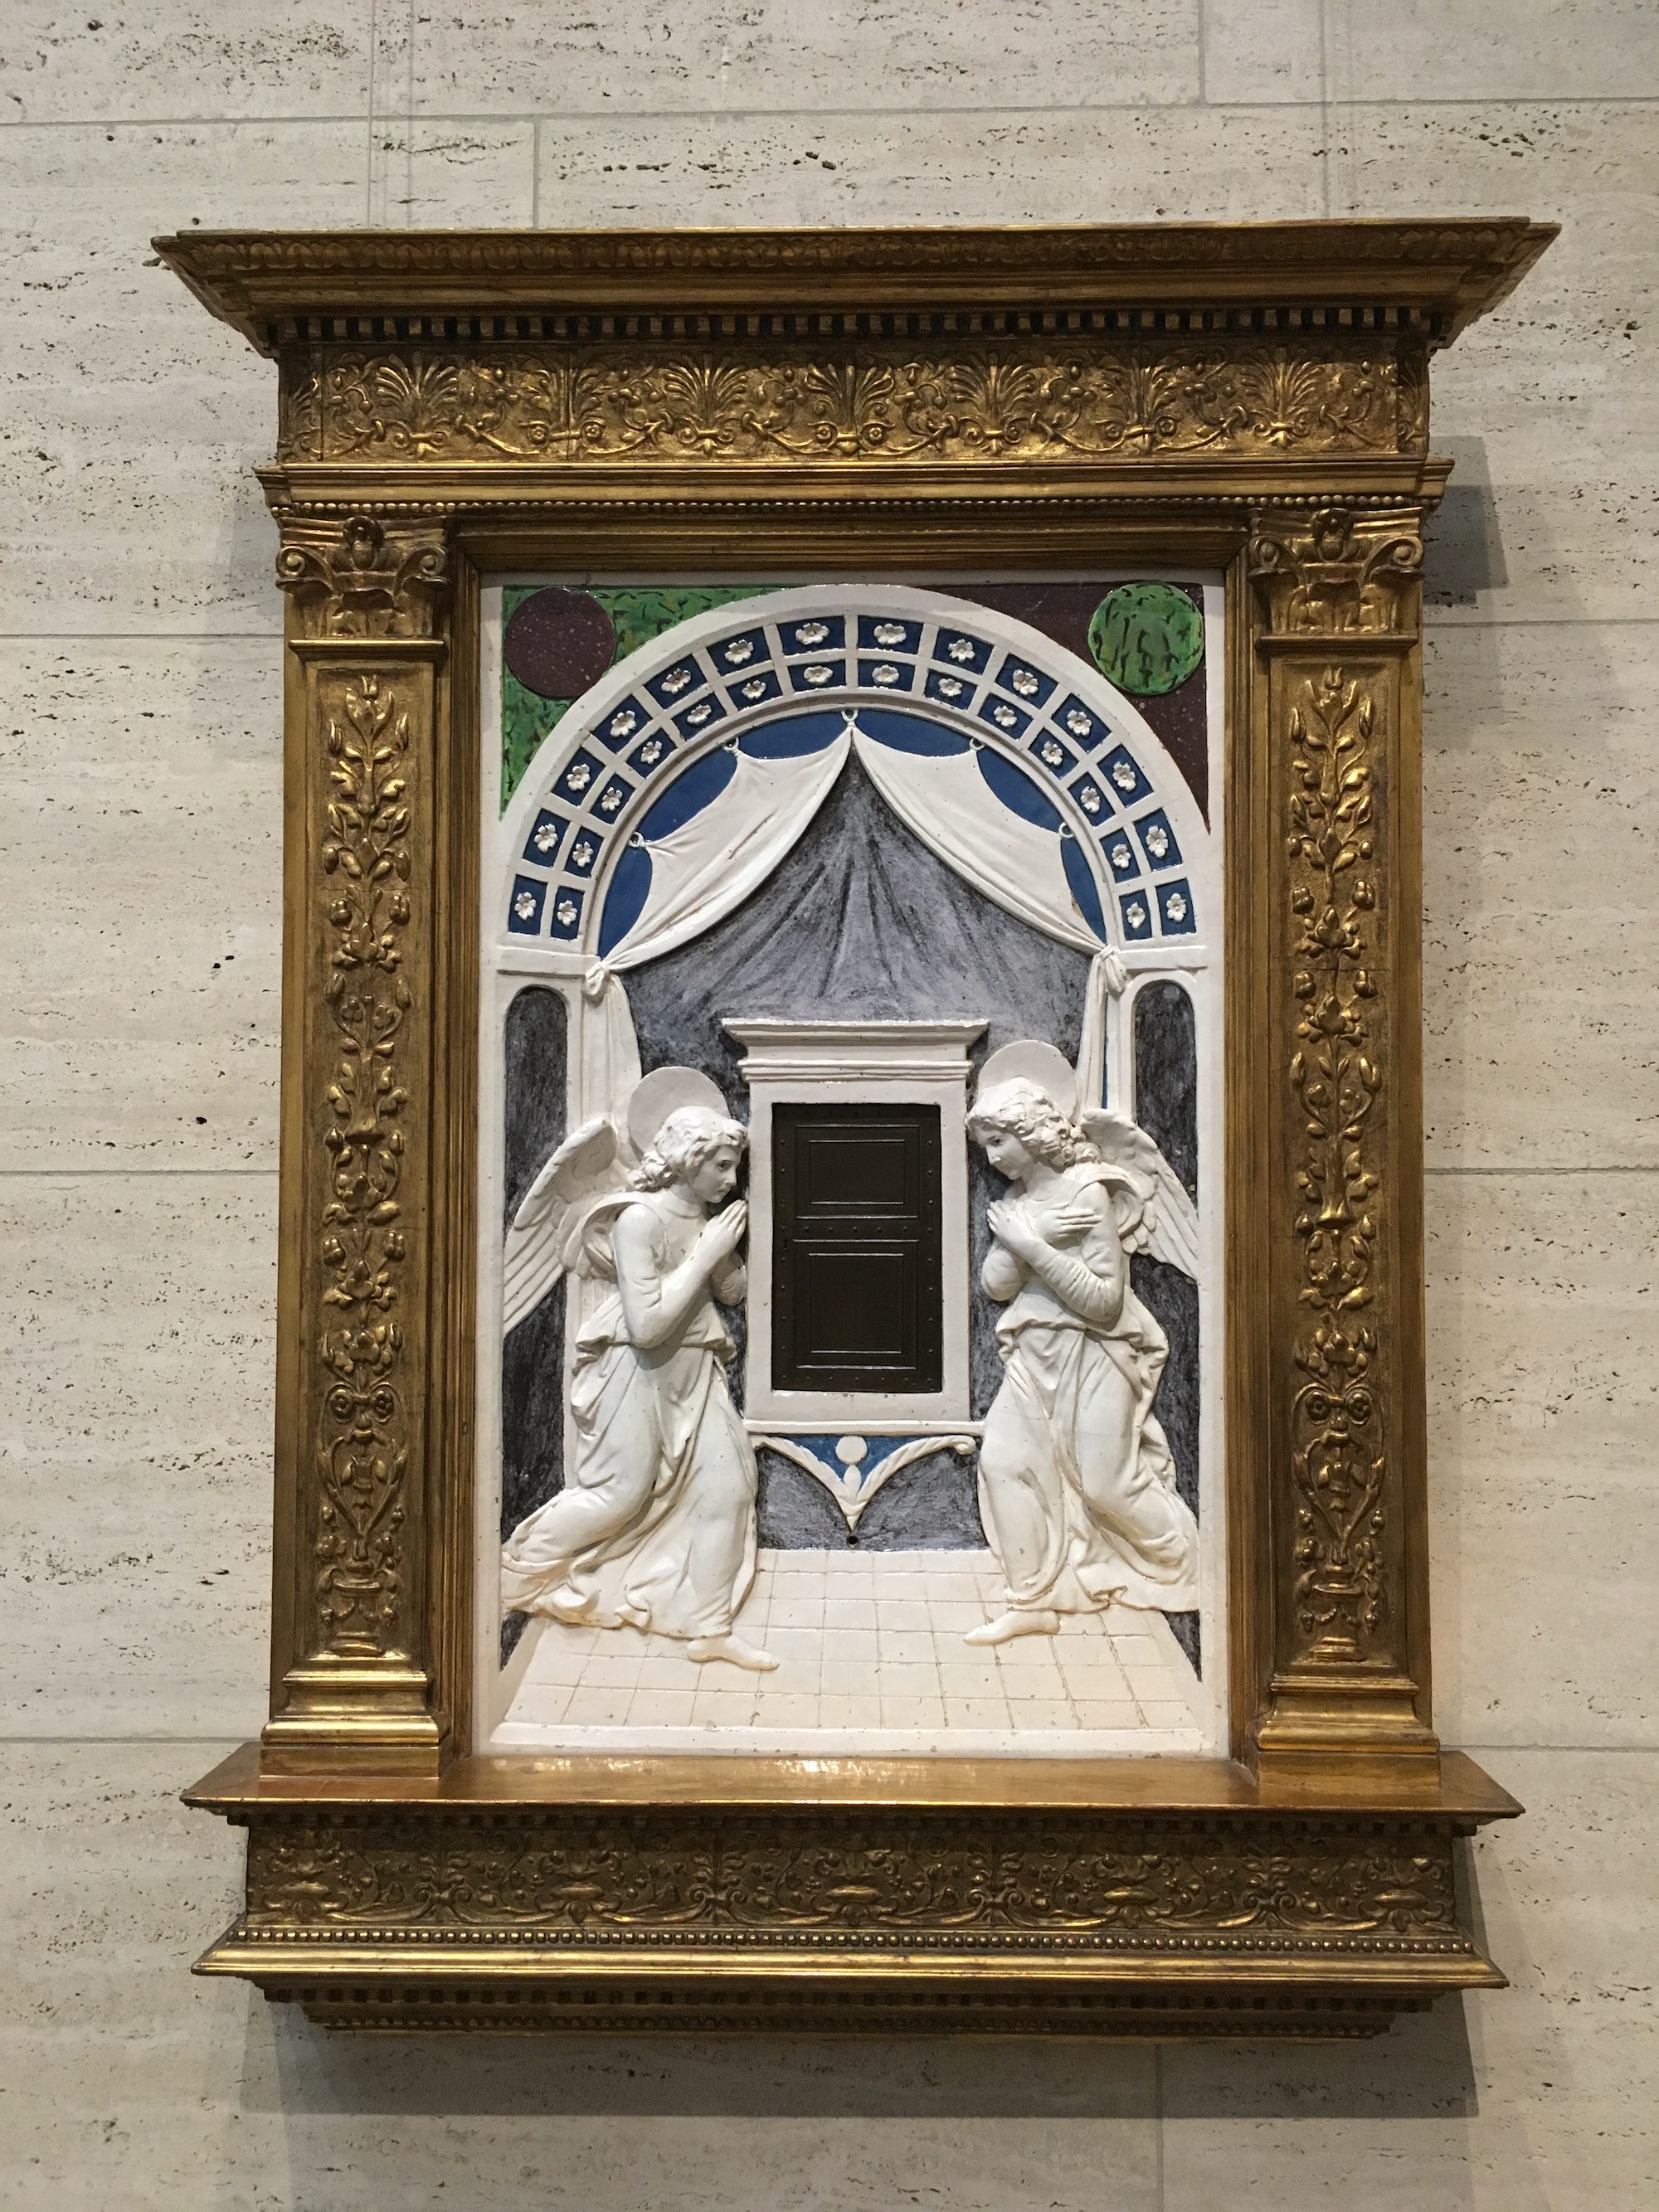 Tabernacolo by Andrea della Robbia - ca. 1470 - 76,2 cm 